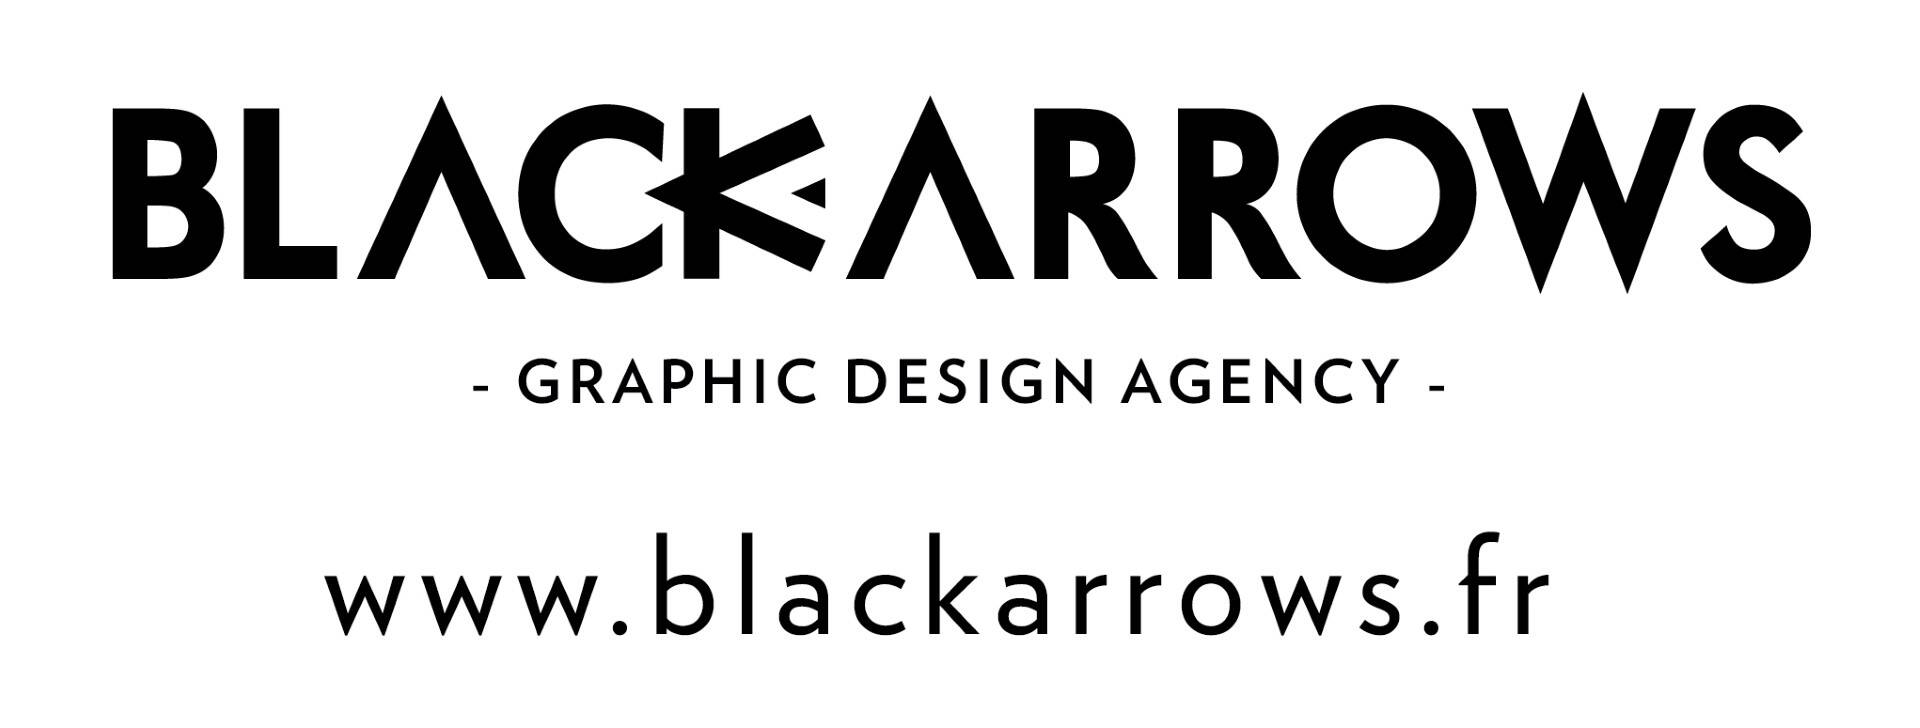 Black Arrows Graphic Design Agency